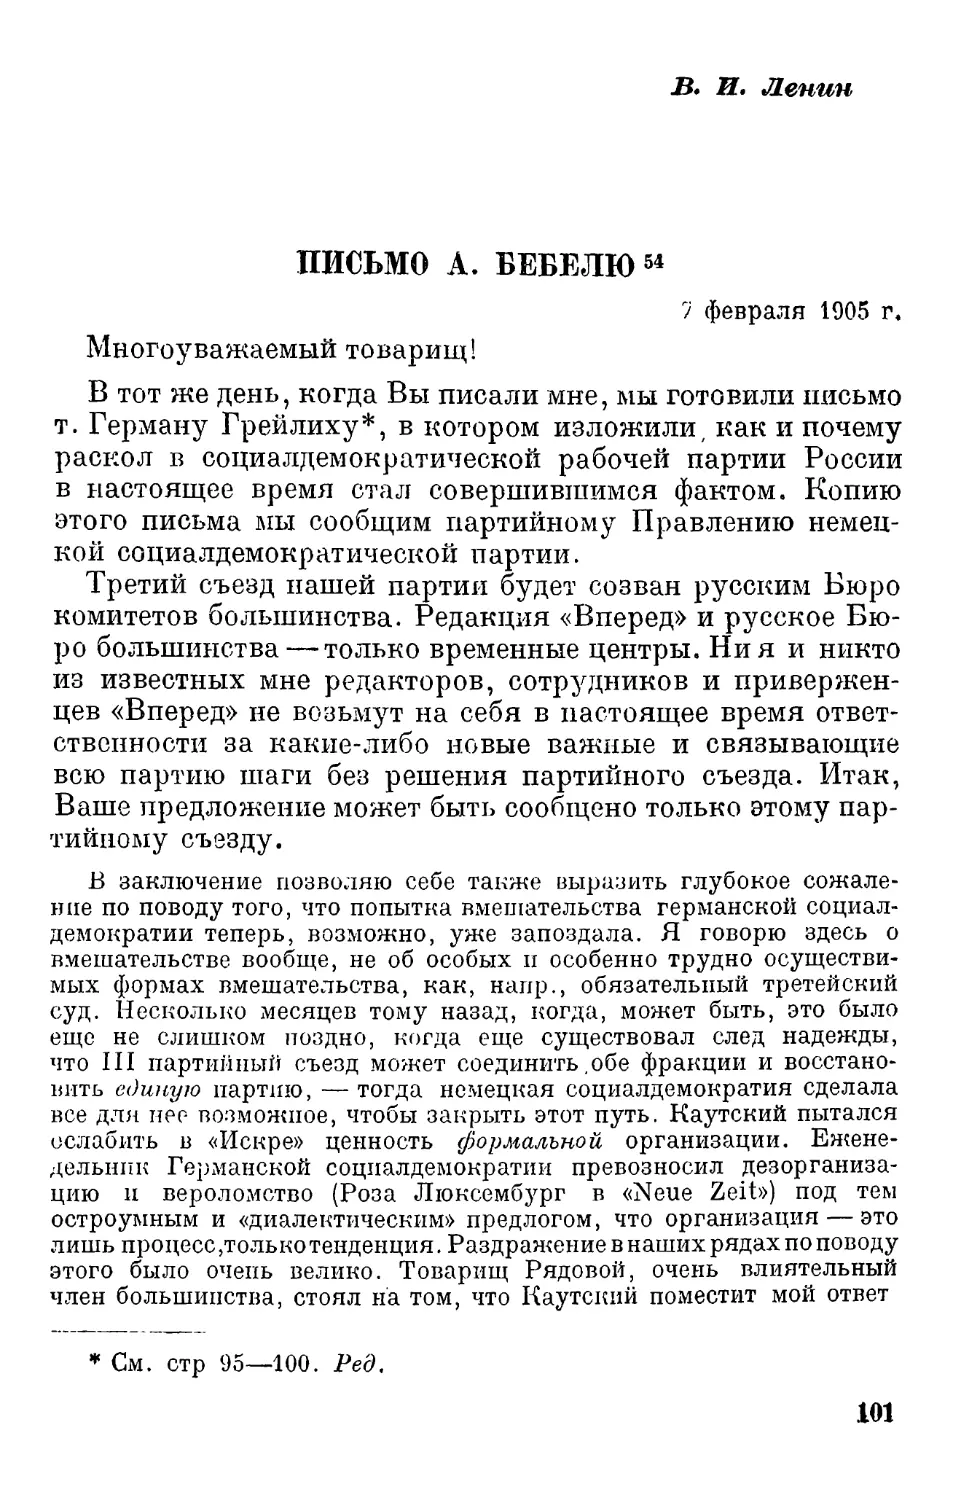 В.И. Ленин. Письмо А. Бебелю. 7 февраля 1905 г.